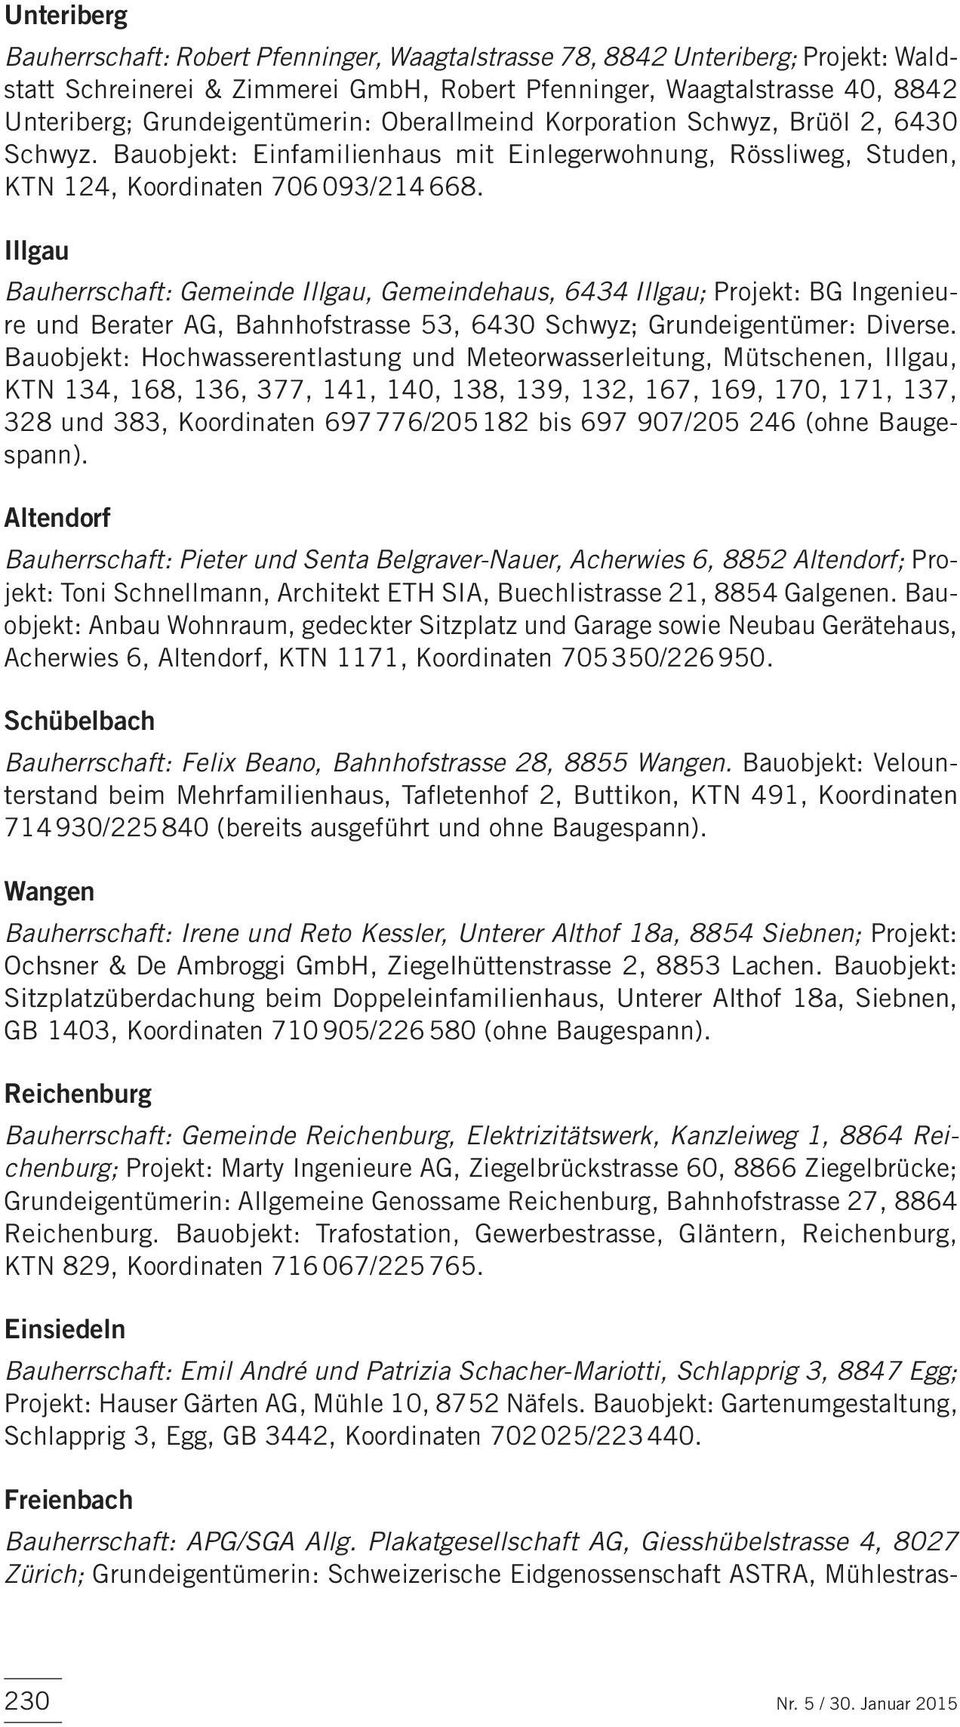 Illgau Bauherrschaft: Gemeinde Illgau, Gemeindehaus, 6434 Illgau; Projekt: BG Ingenieure und Berater AG, Bahnhofstrasse 53, 6430 Schwyz; Grundeigentümer: Diverse.